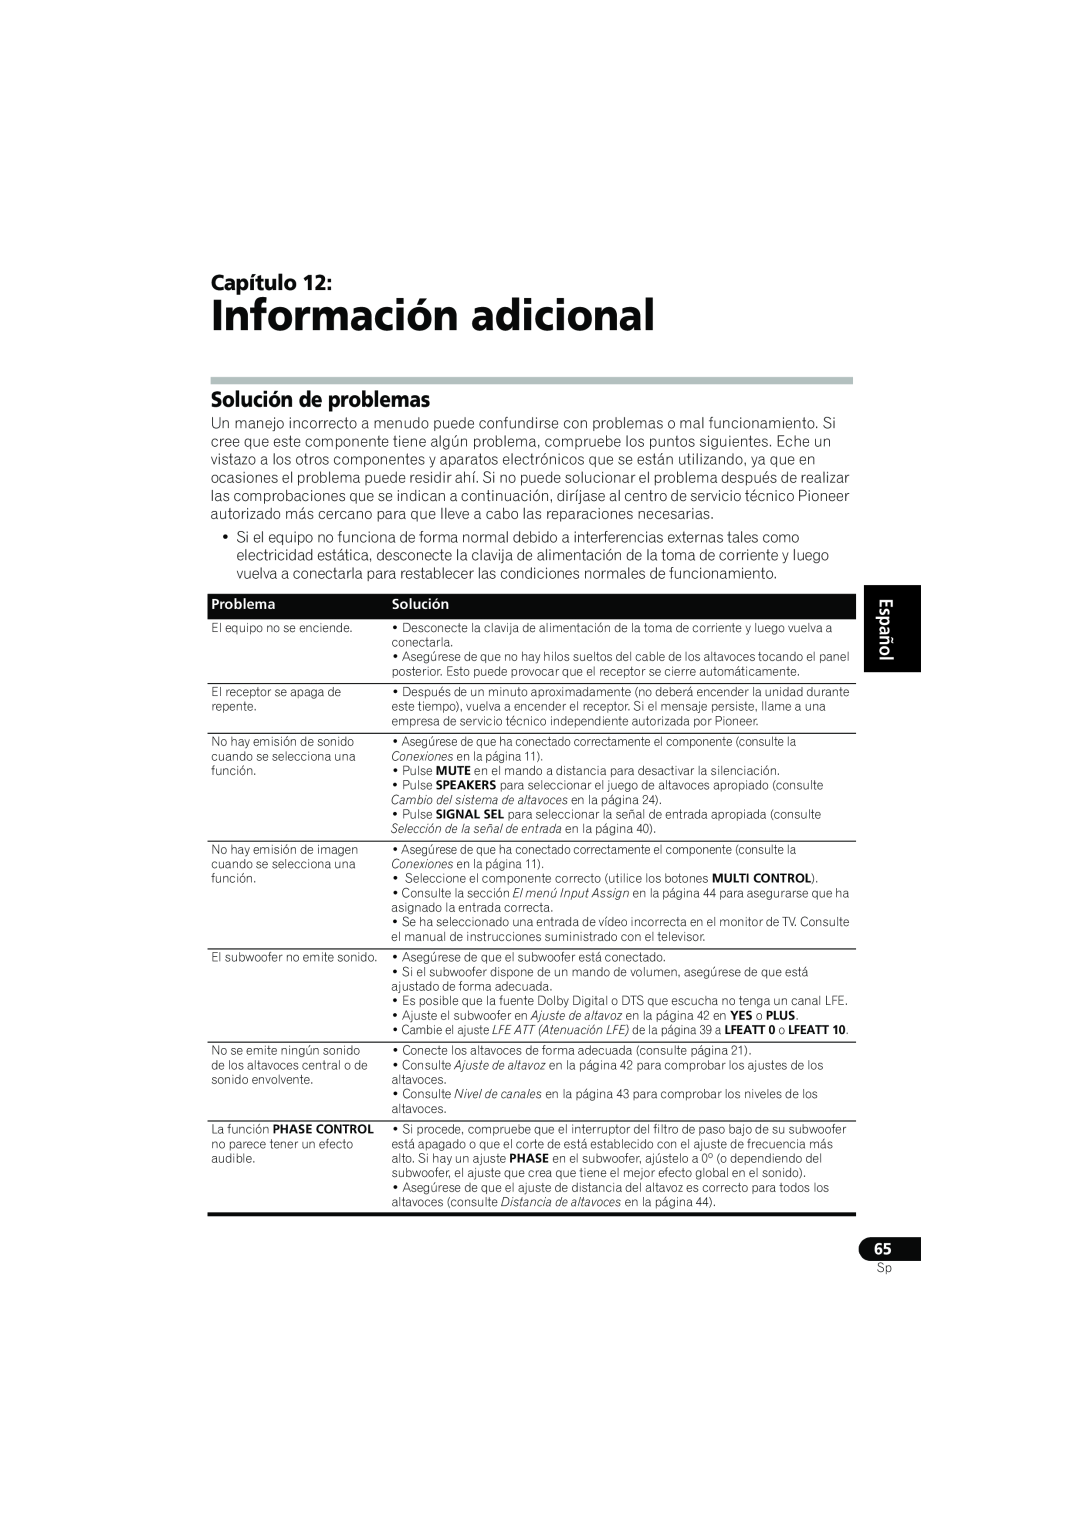 Pioneer VSX-819H-S manual Información adicional, Solución de problemas, English Español 65, Capítulo, Problema 